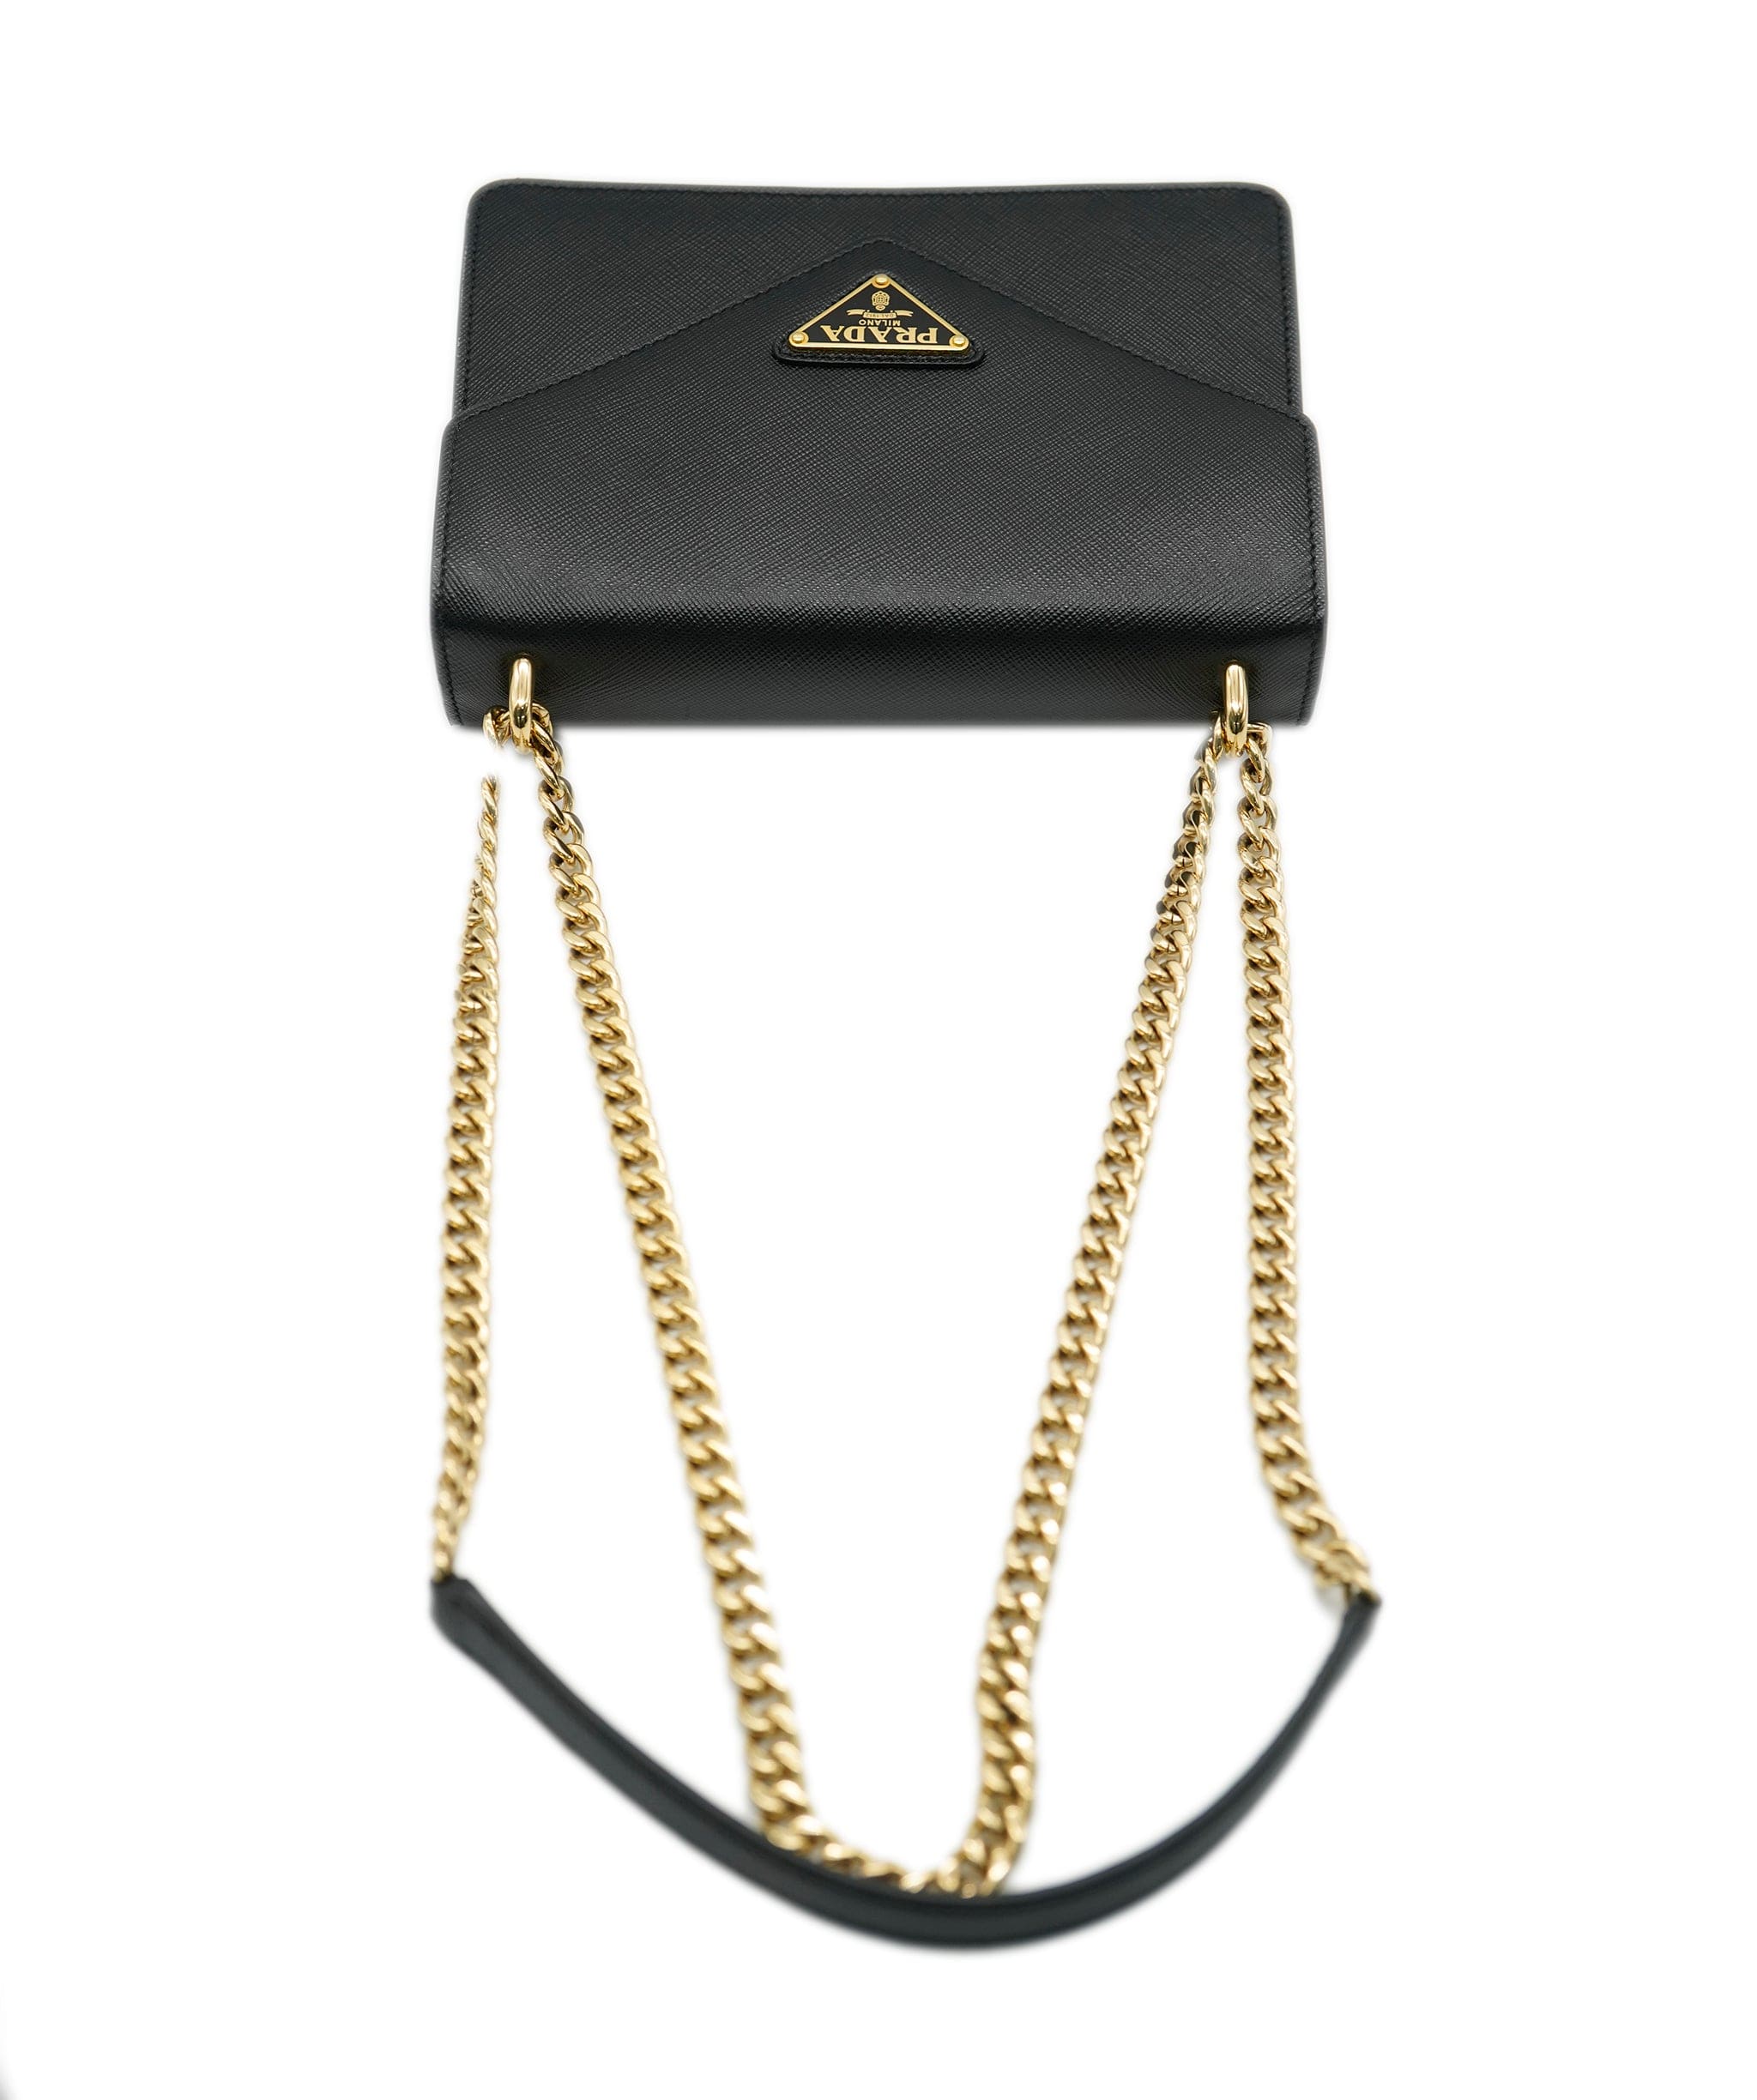 Prada Prada black saffiano envelope bag with GHW - AJC0651